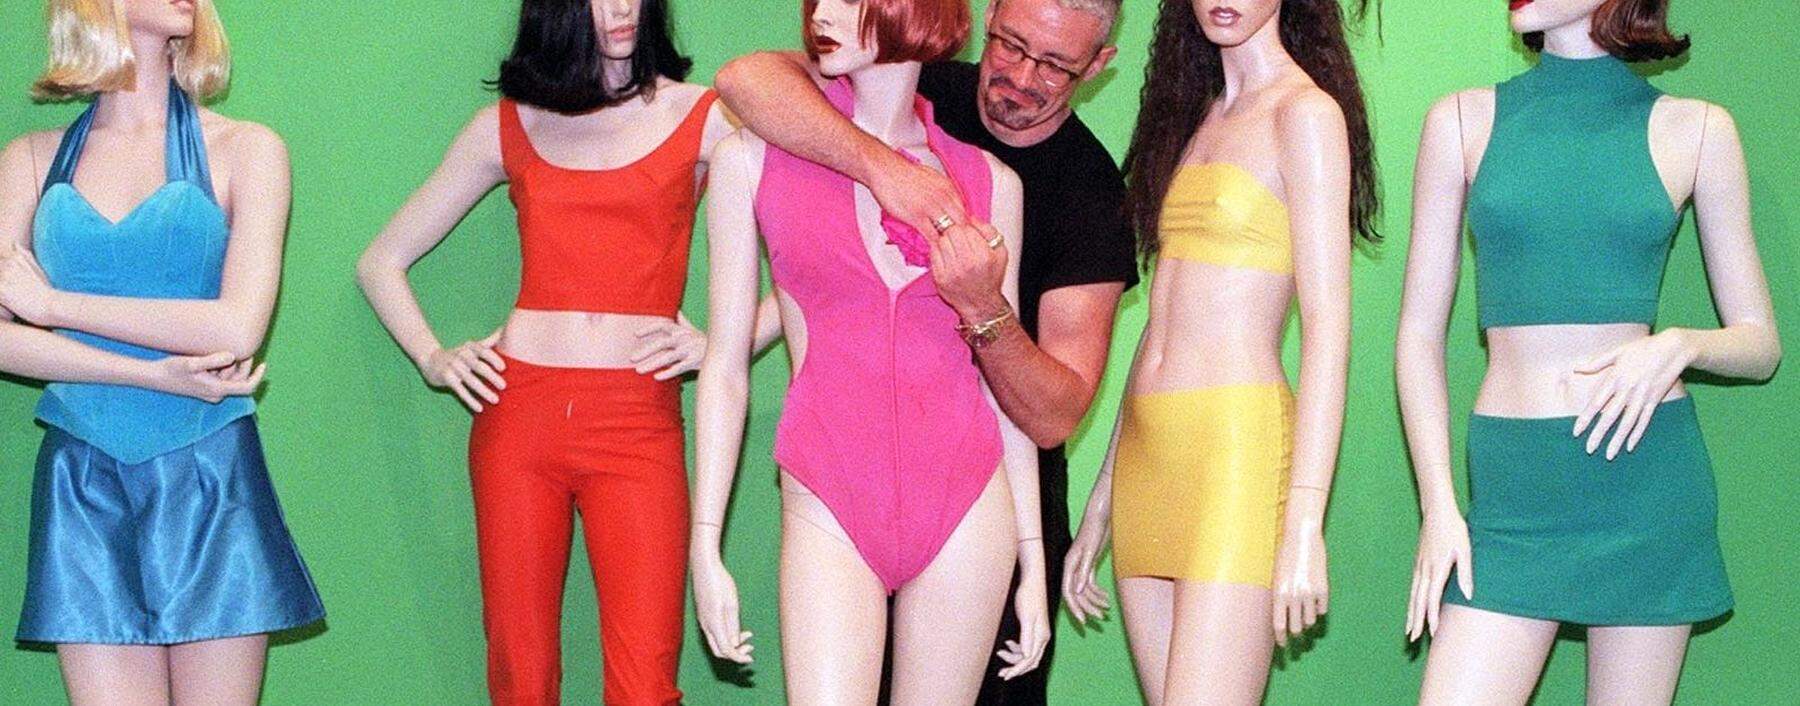 Kostüme der Spice Girls, die während einer Auktion bei Sotheby's versteigert wurden.